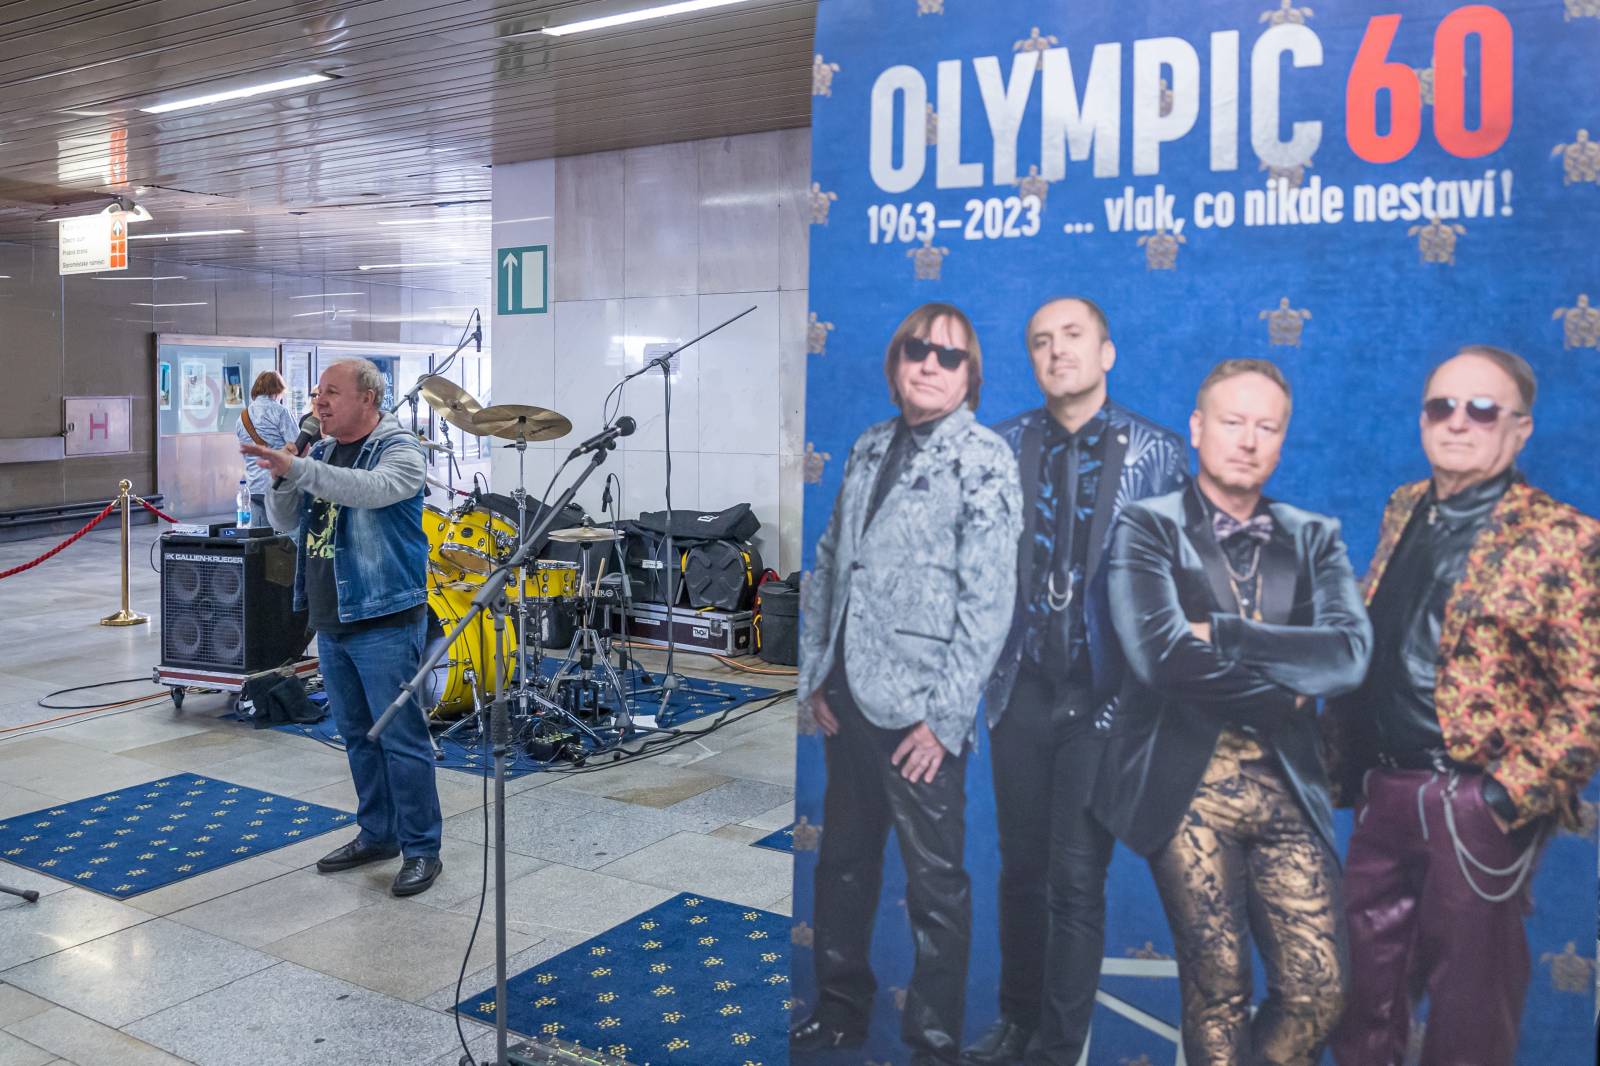 Olympic originálně pozval fanoušky do O2 areny, zahrál jim ve vestibulu metra